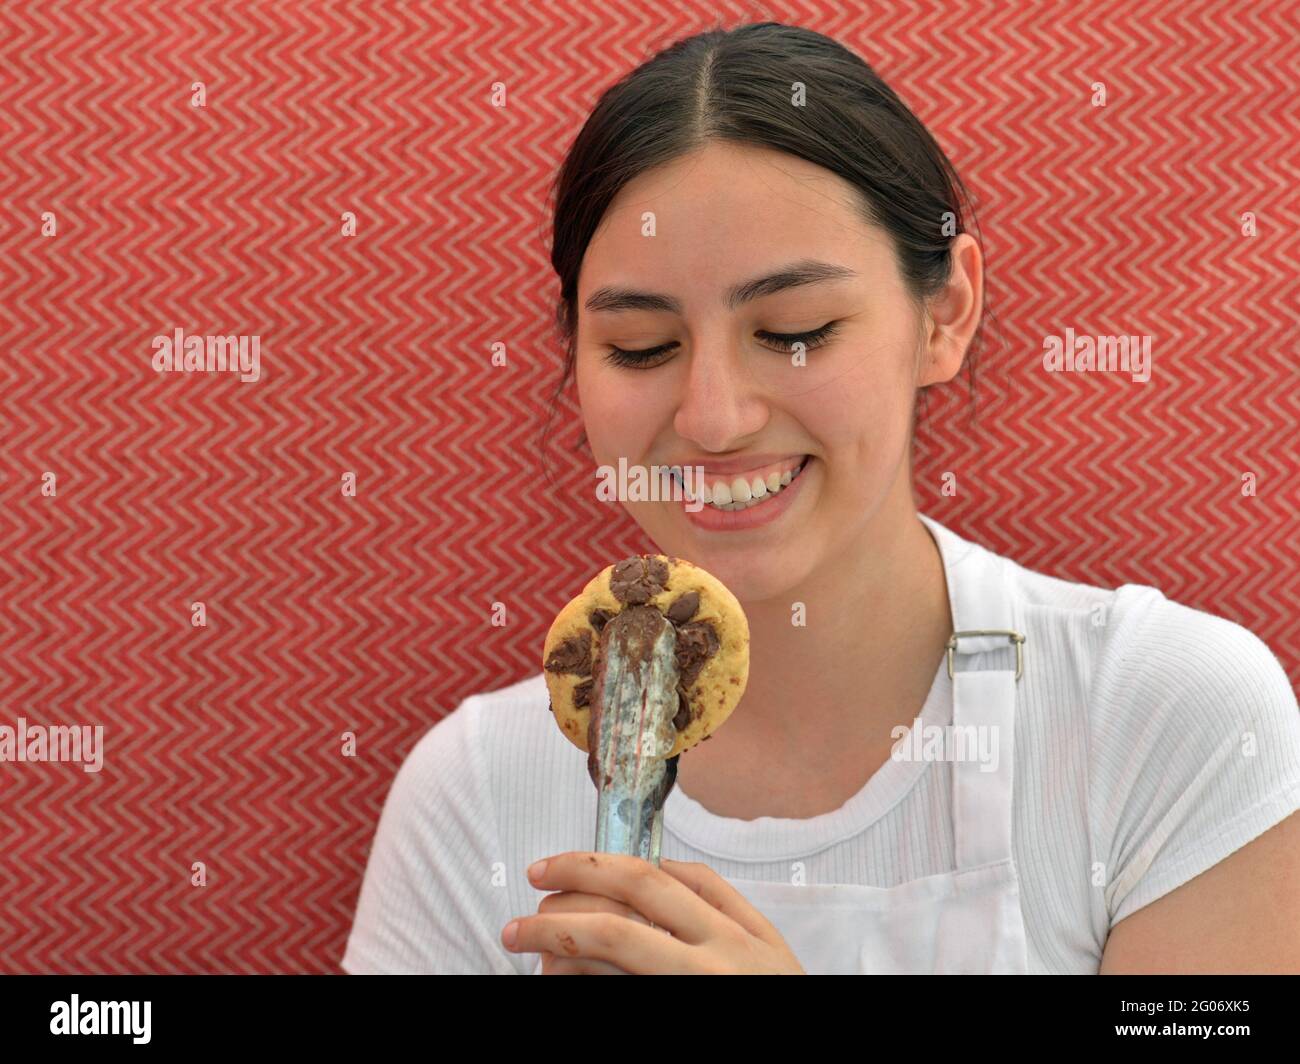 Junge charmante Brünette Verkäuferin lächelt und schaut auf einen frisch gebackenen Gourmet-Chocolate-Chip-Cookie in einer Essenzange vor einem roten Hintergrund. Stockfoto